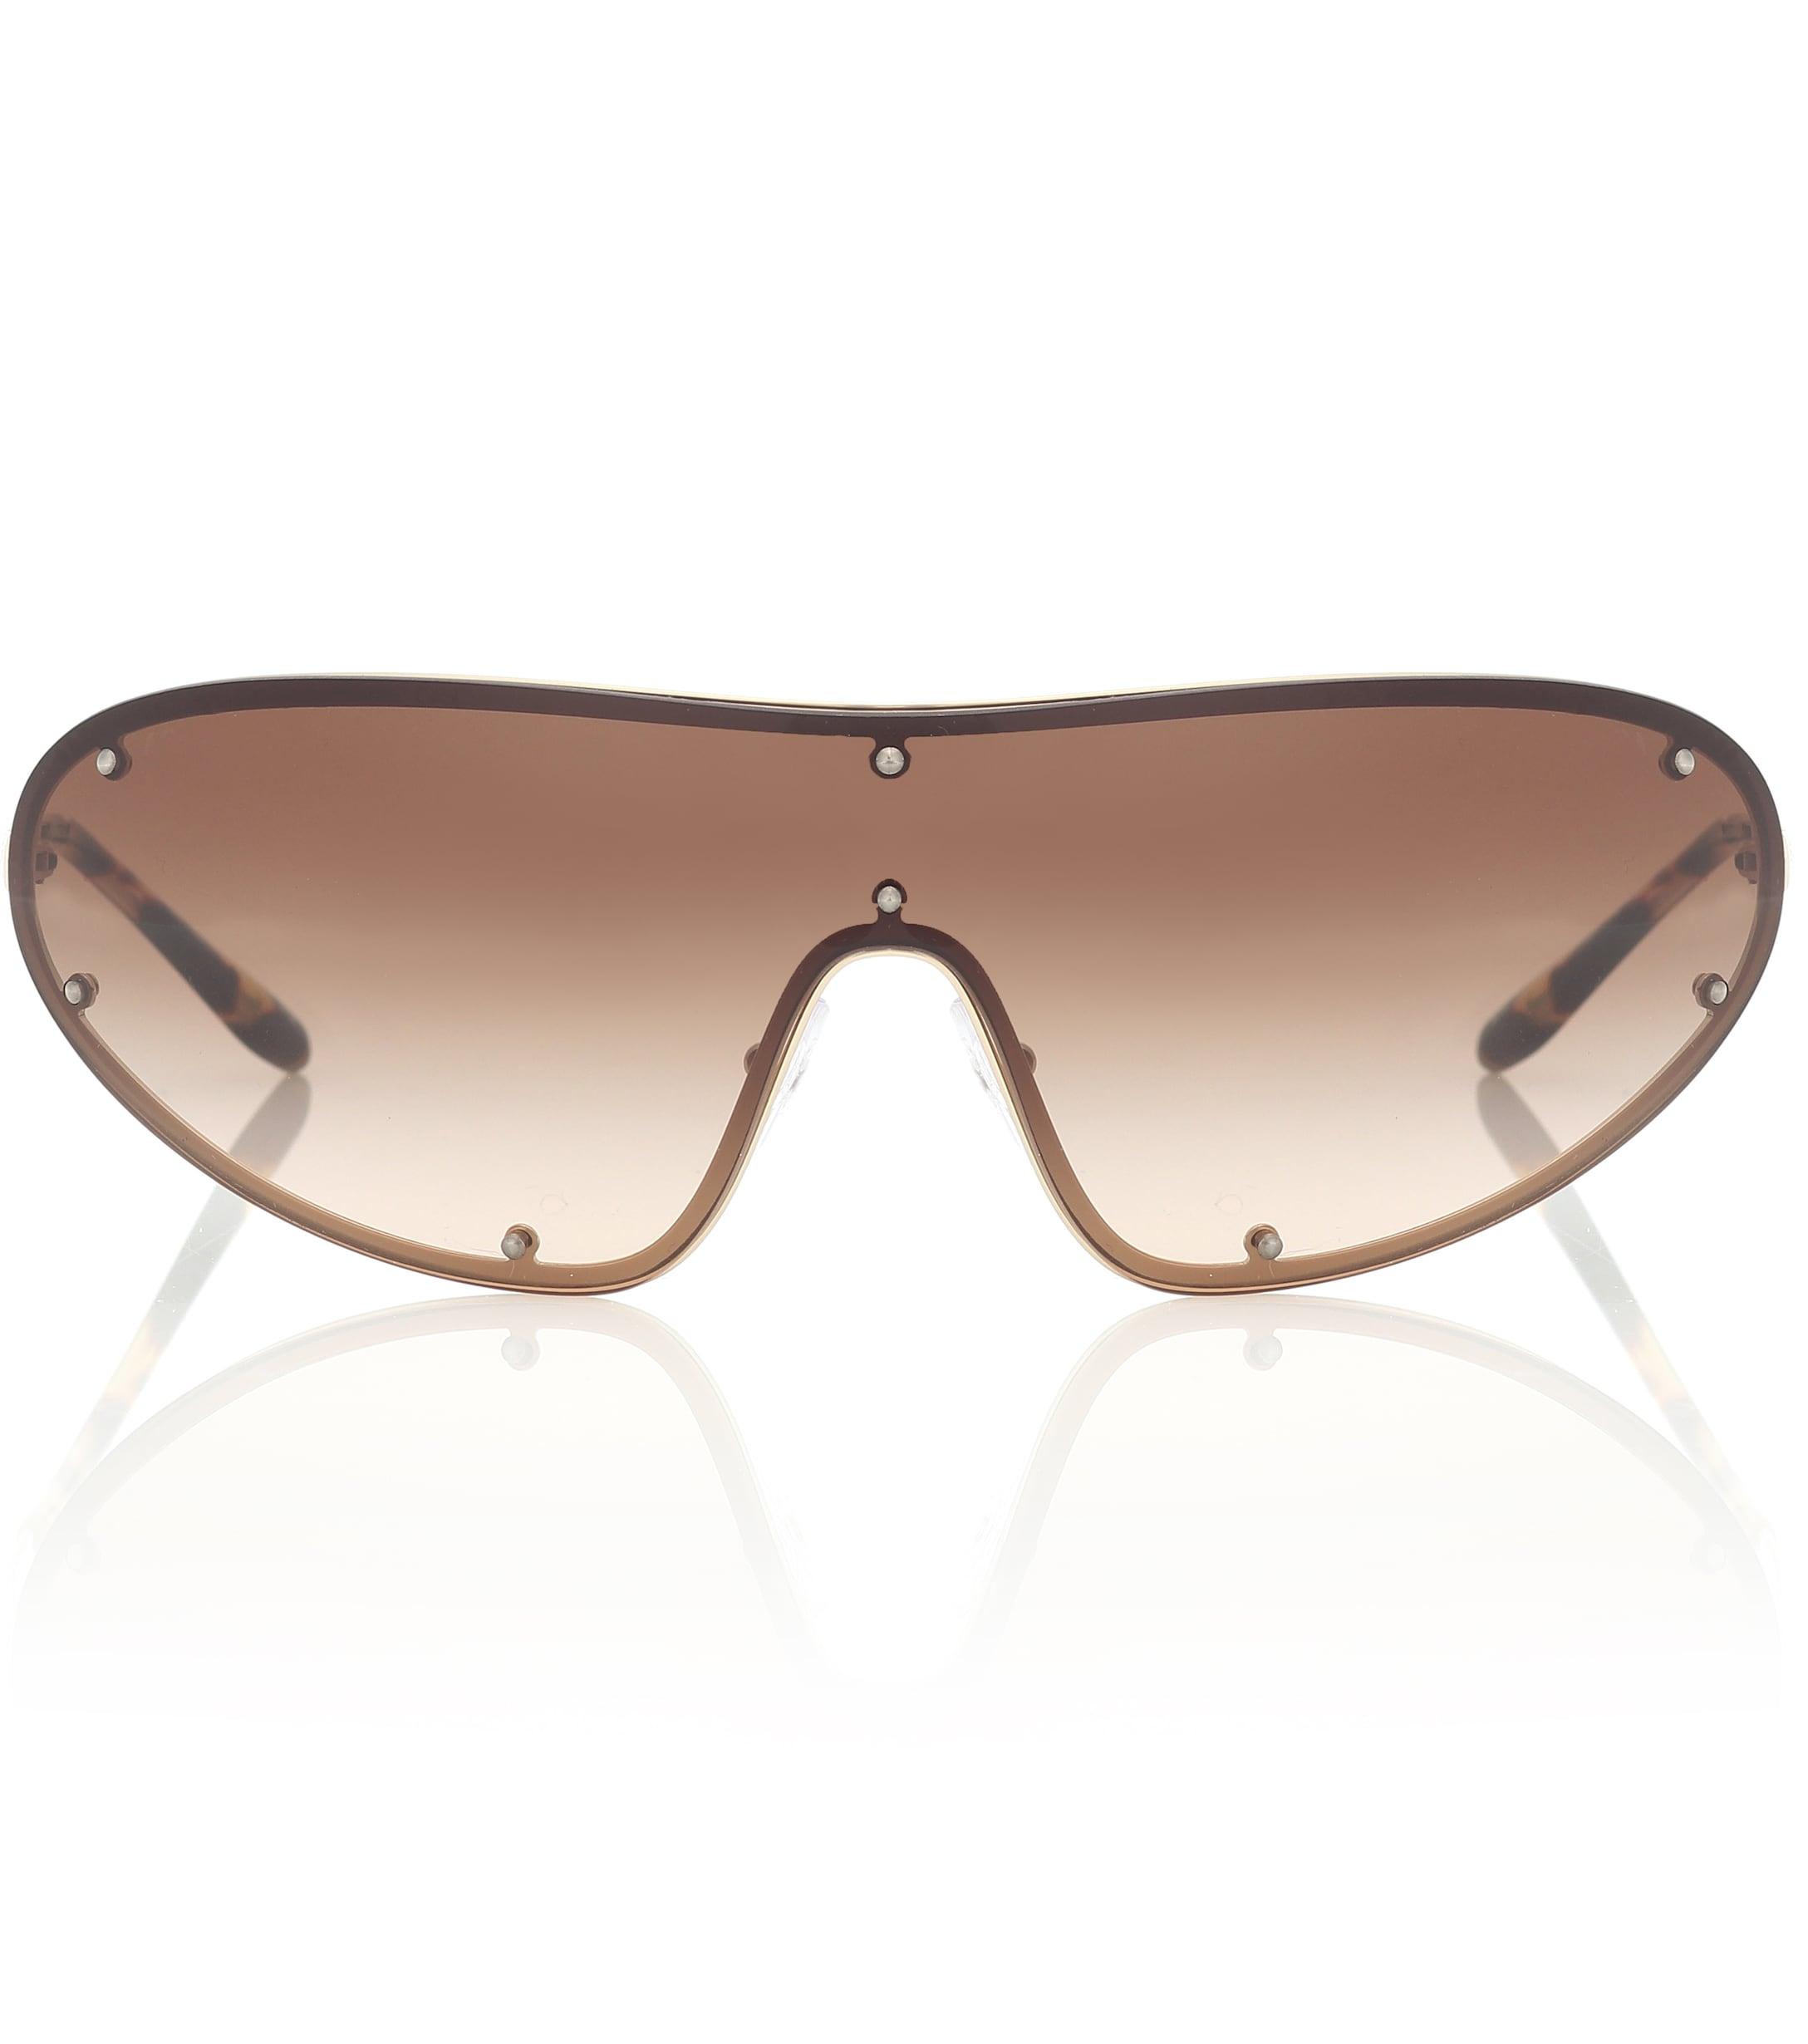 Prada Wrap Sunglasses in Brown - Lyst